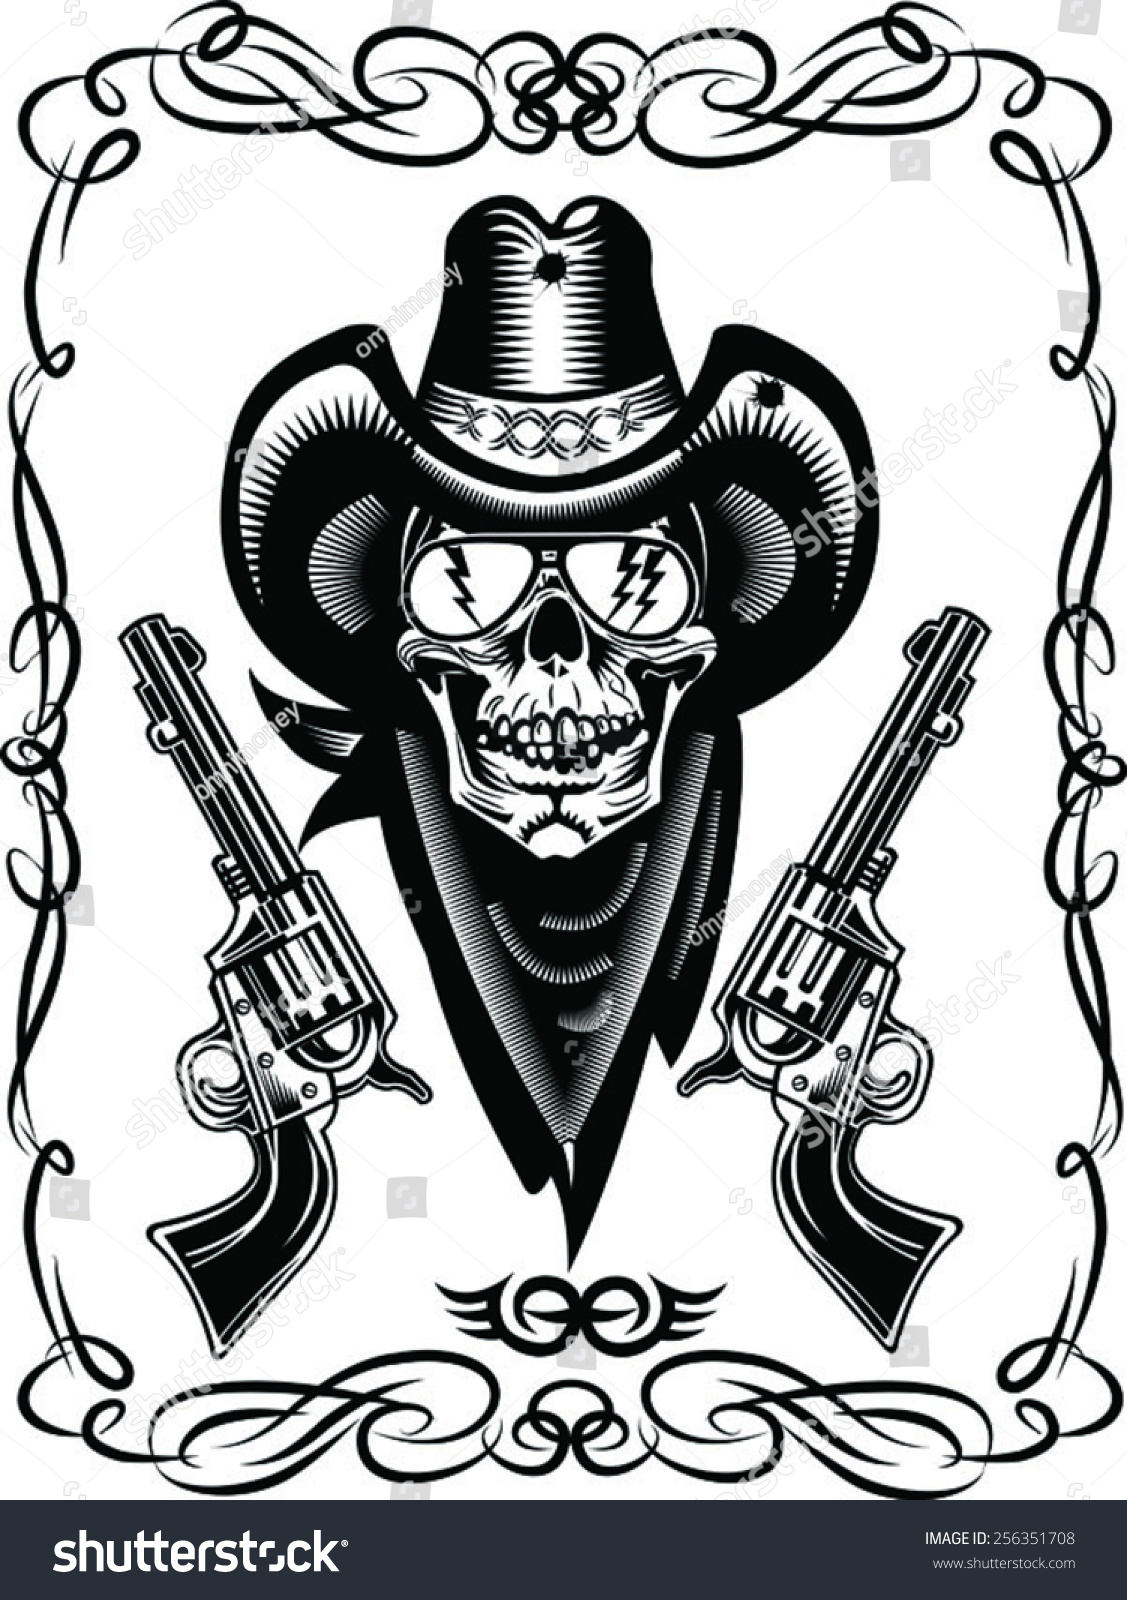 Cowboy Skull And Revolver Stock Vector Illustration 256351708 ...